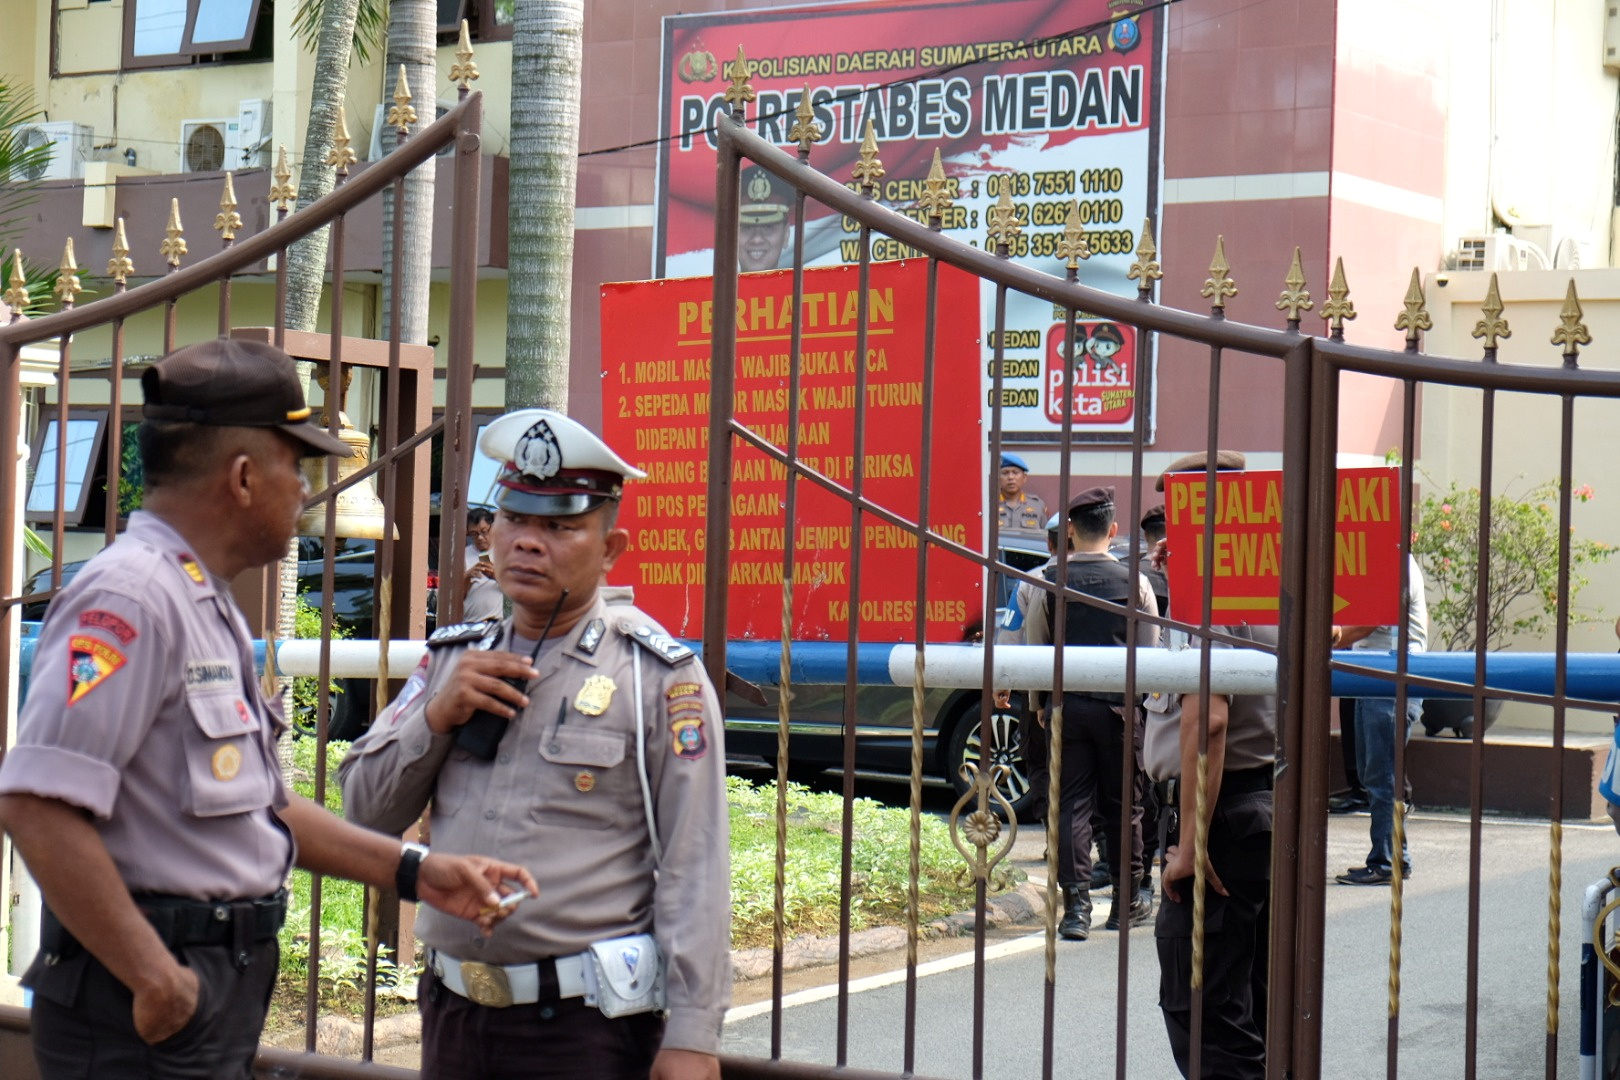 Ινδονησία: Φοιτητής ήταν ο καμικάζι που ανατινάχθηκε στο αρχηγείο της αστυνομίας